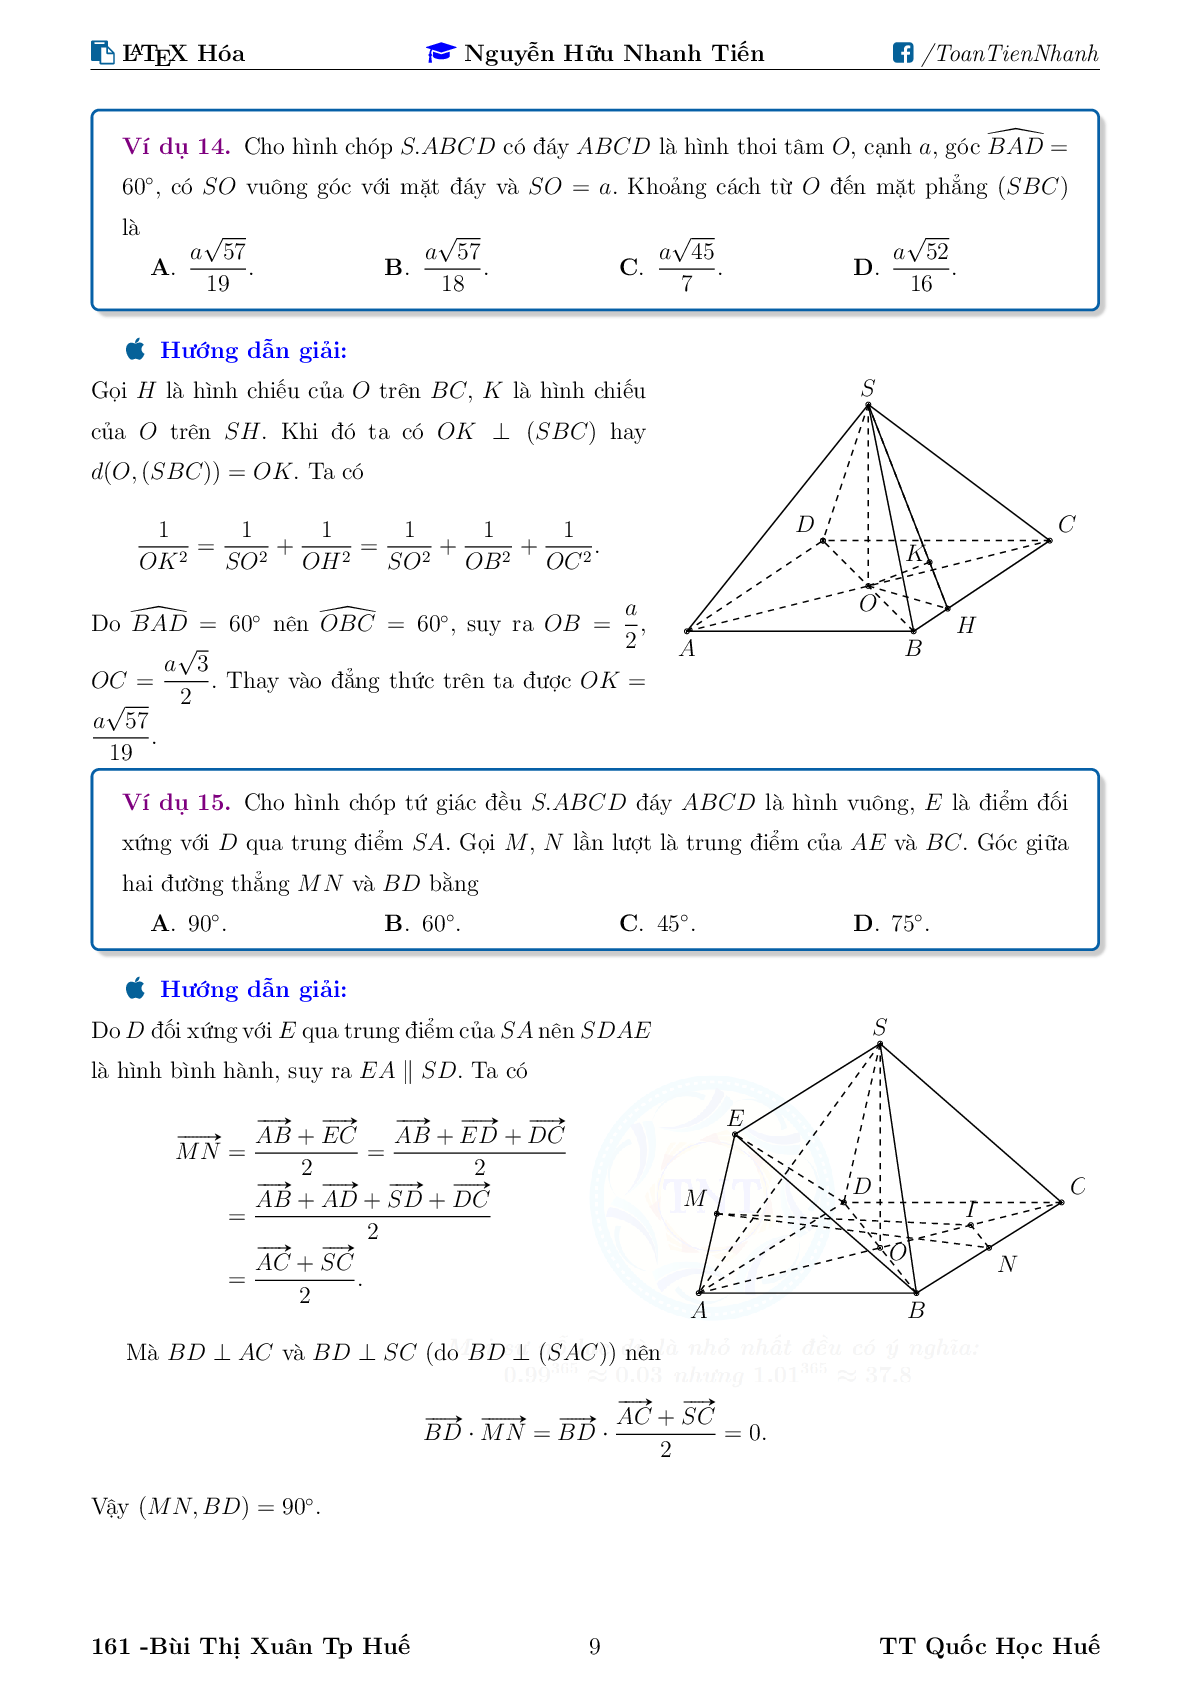 Chuyên đề về góc và khoảng cách trong không gian (trang 9)